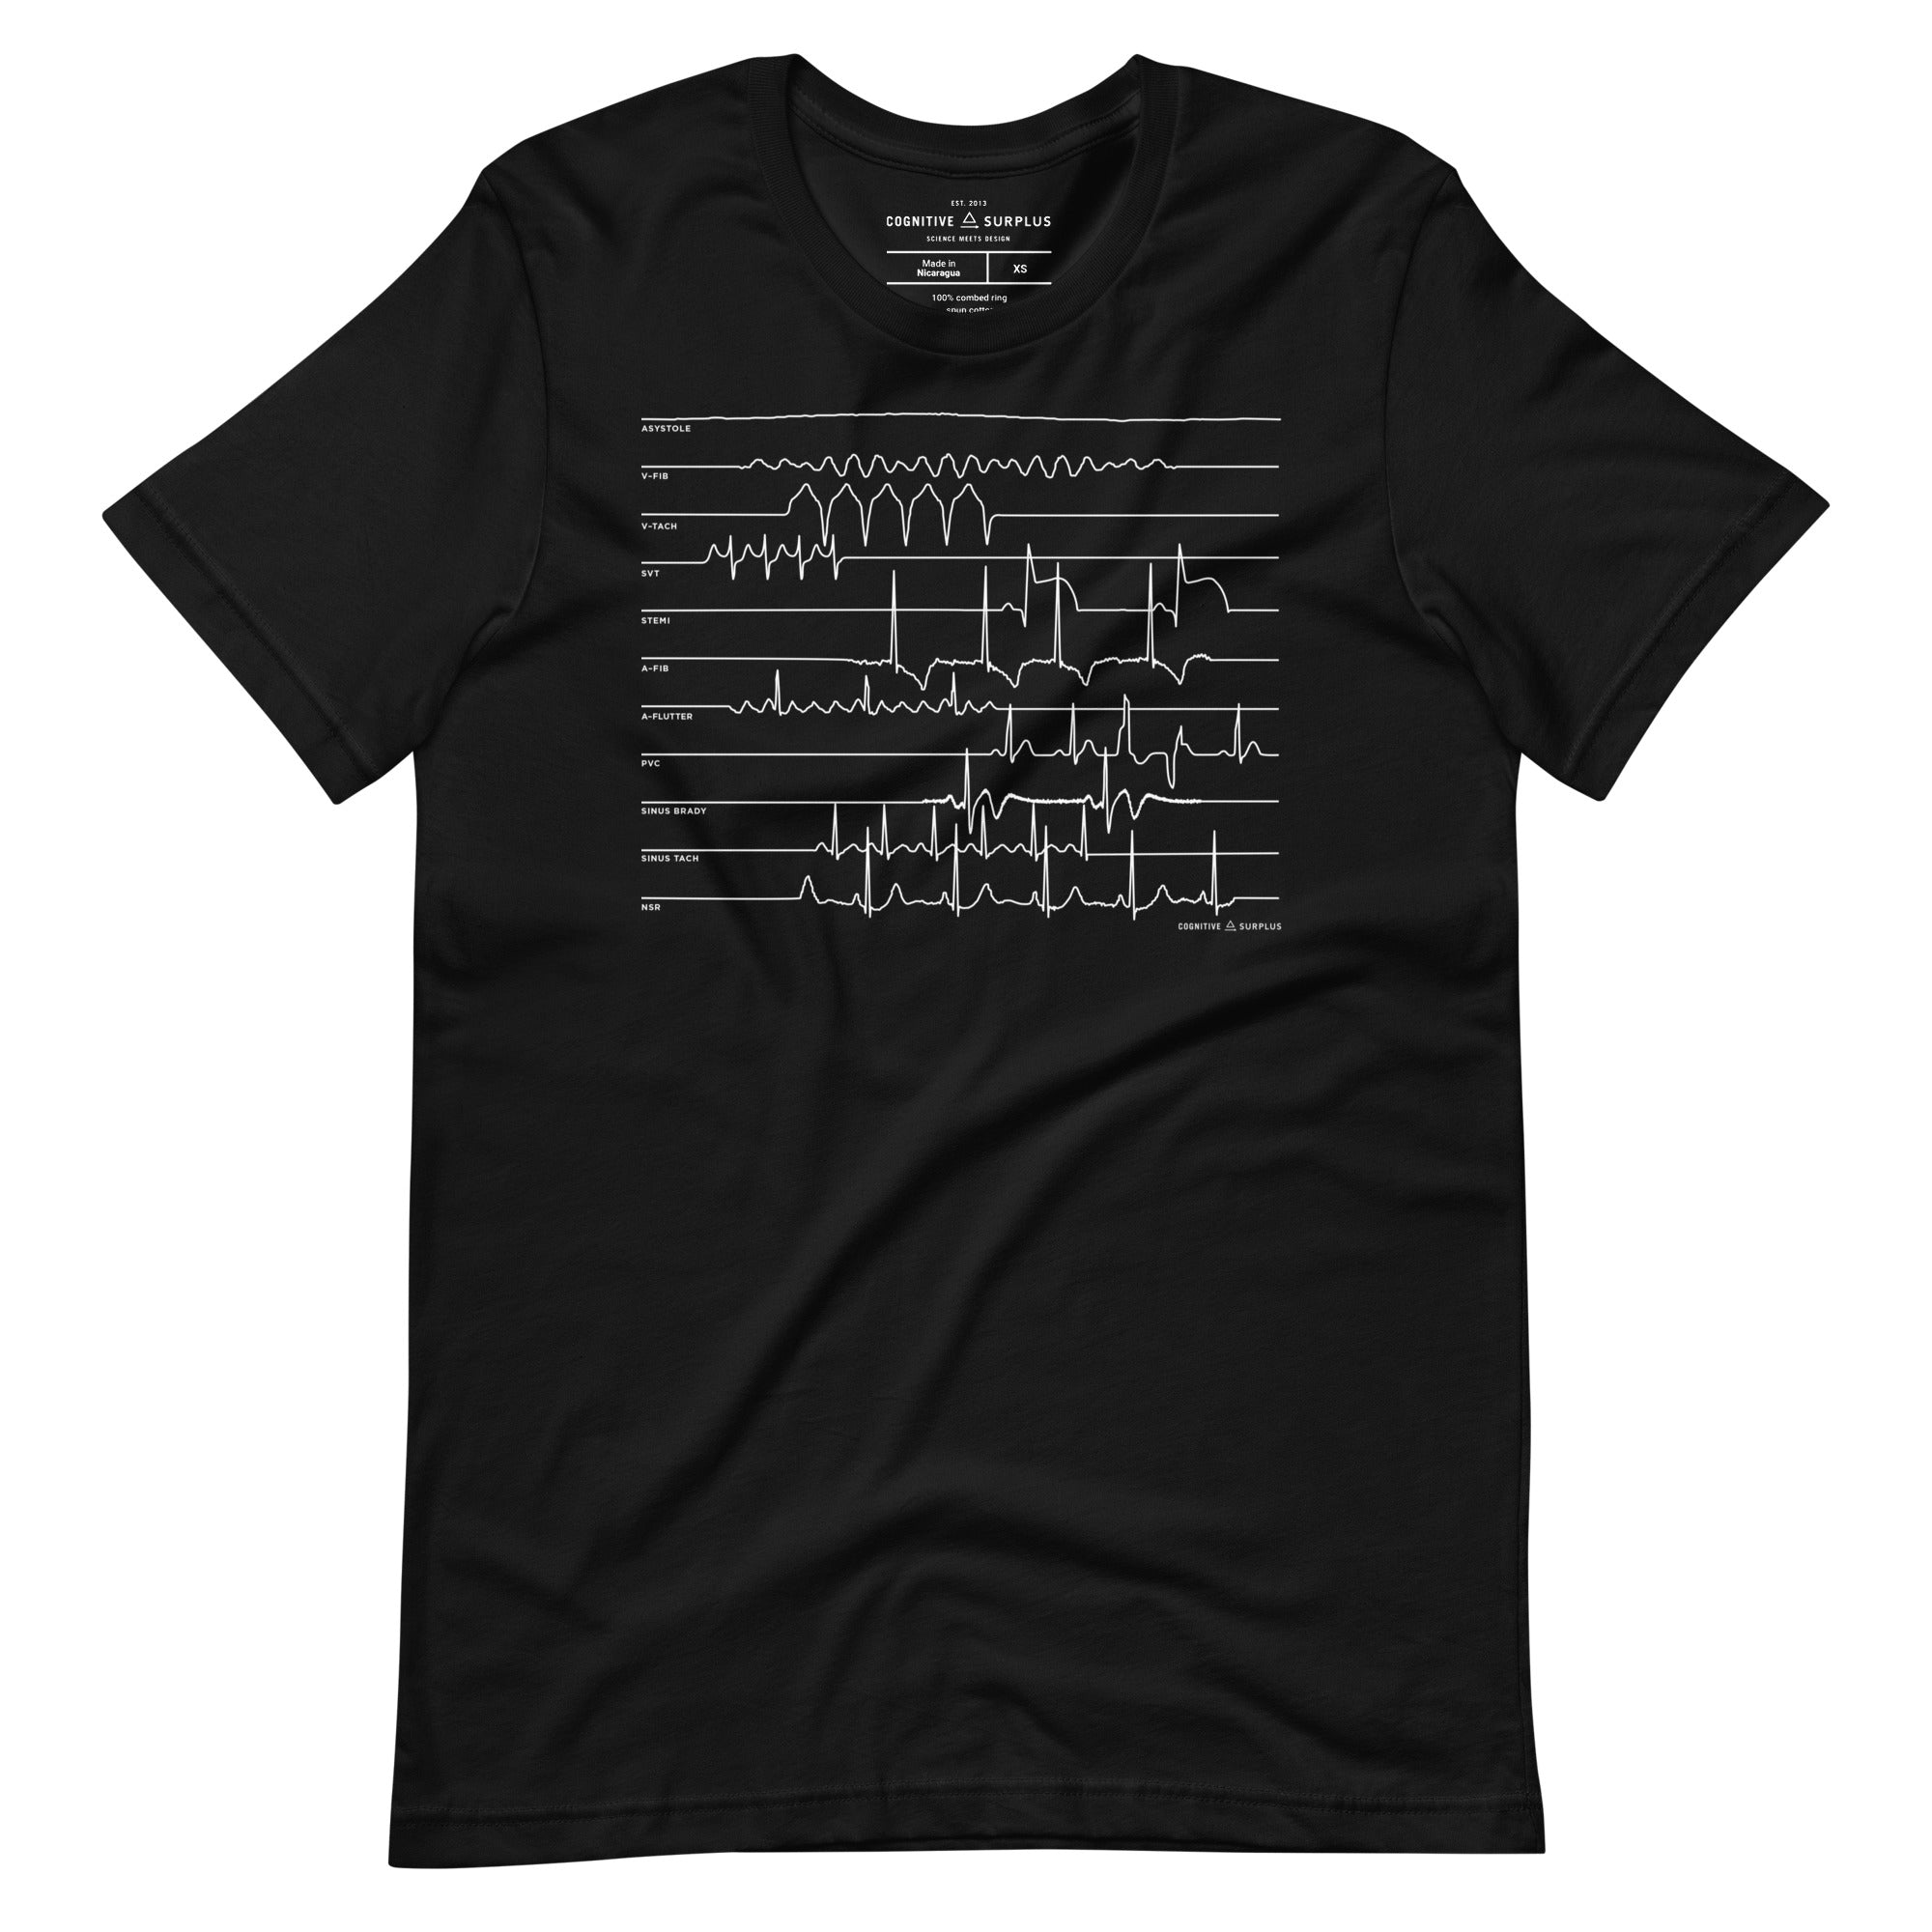 unisex-staple-t-shirt-black-front-654a6b6ecd6e0.jpg